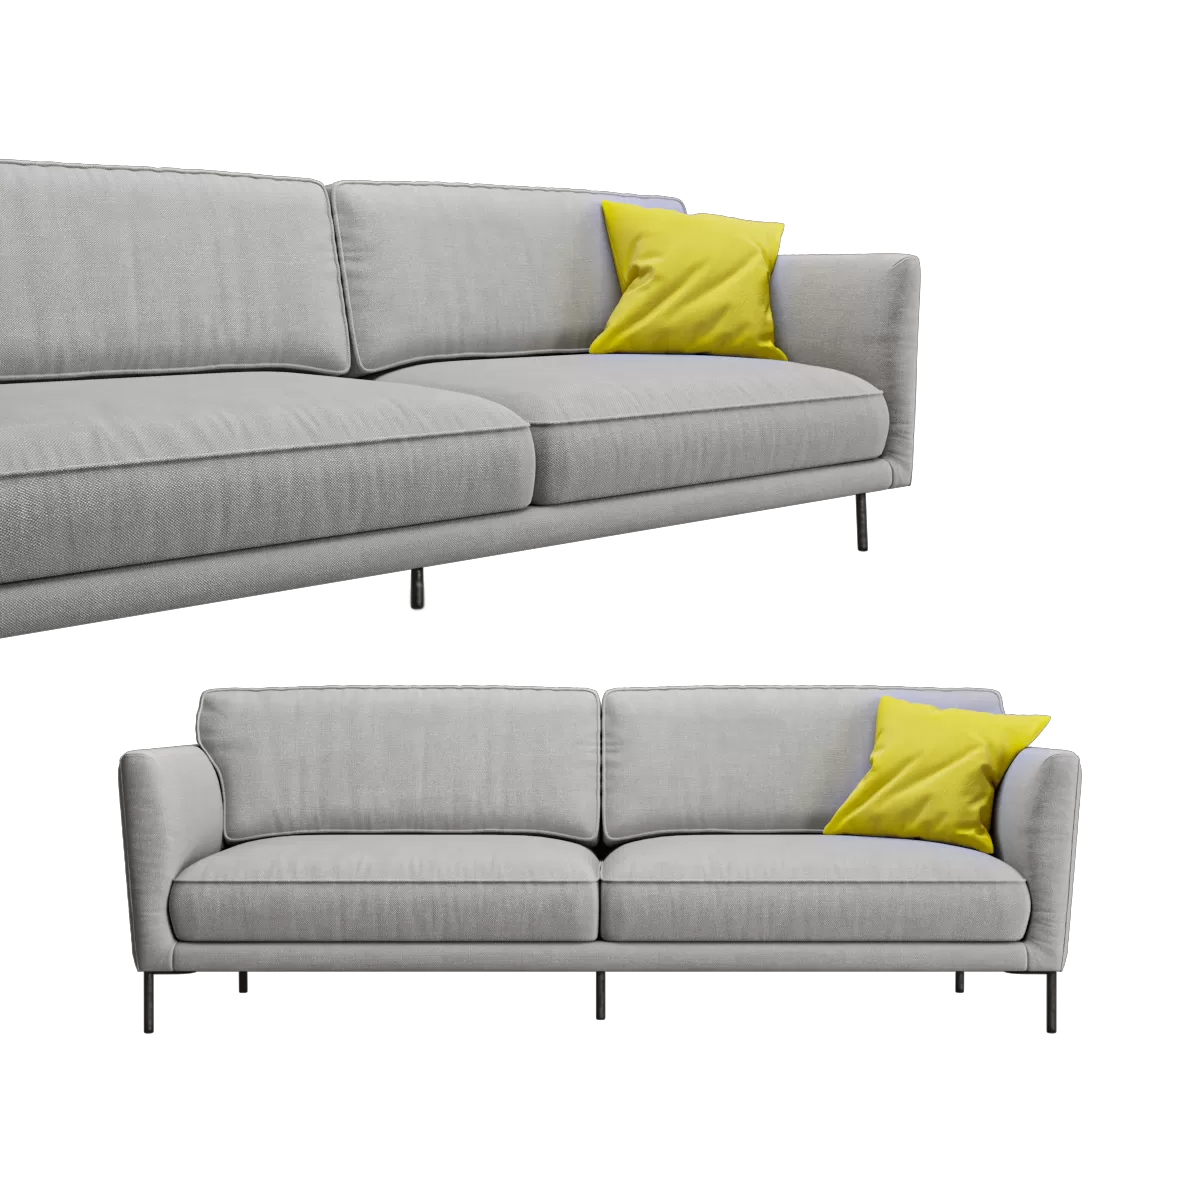 SOFA – Everson Made sofa